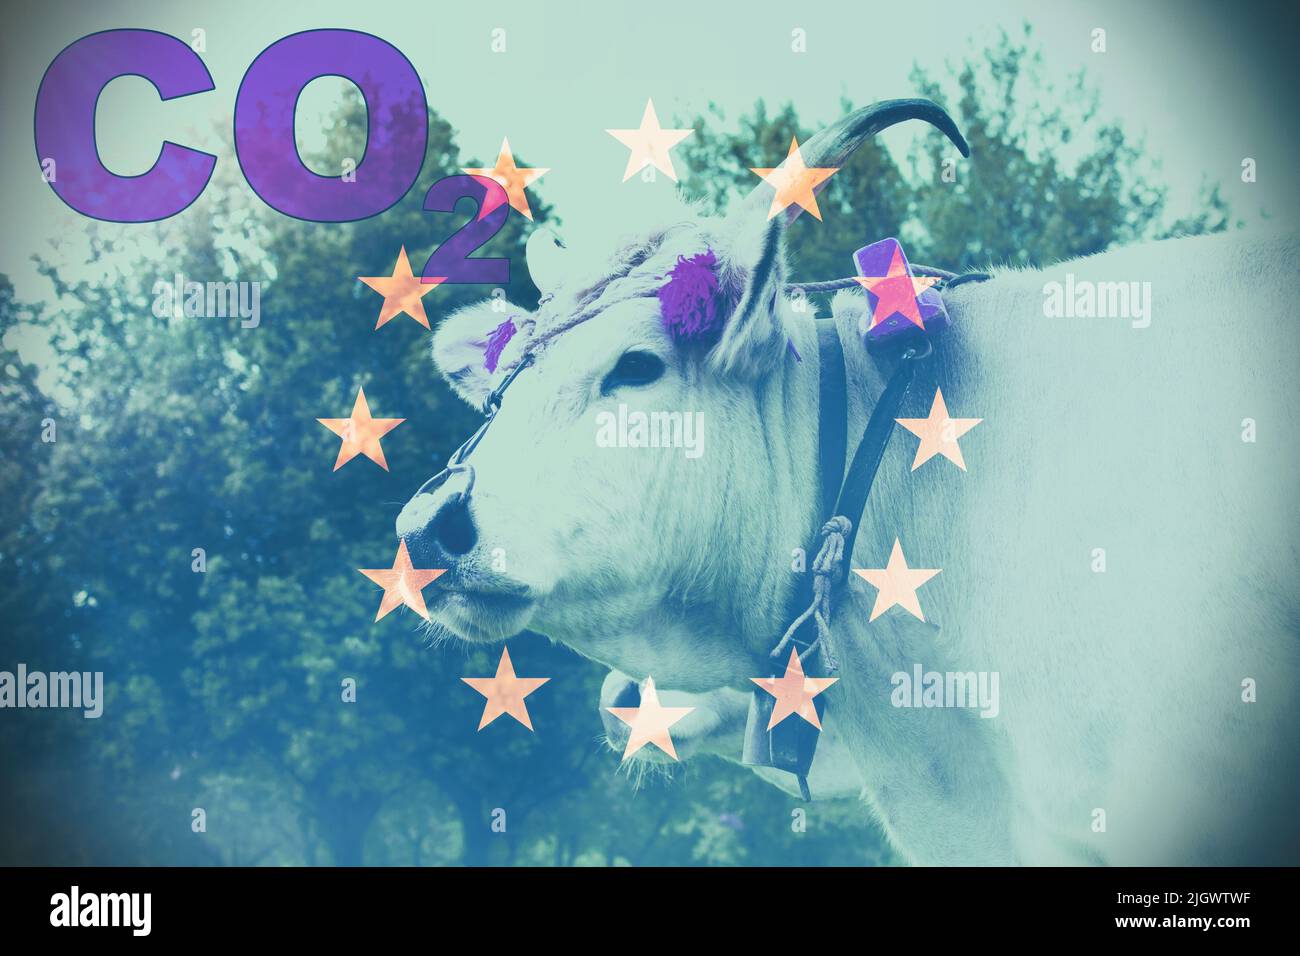 Vache blanche domestique dans une ferme avec drapeau européen comme arrière-plan et le texte 'CO2' et effet de fumée. Concept de pollution. Banque D'Images